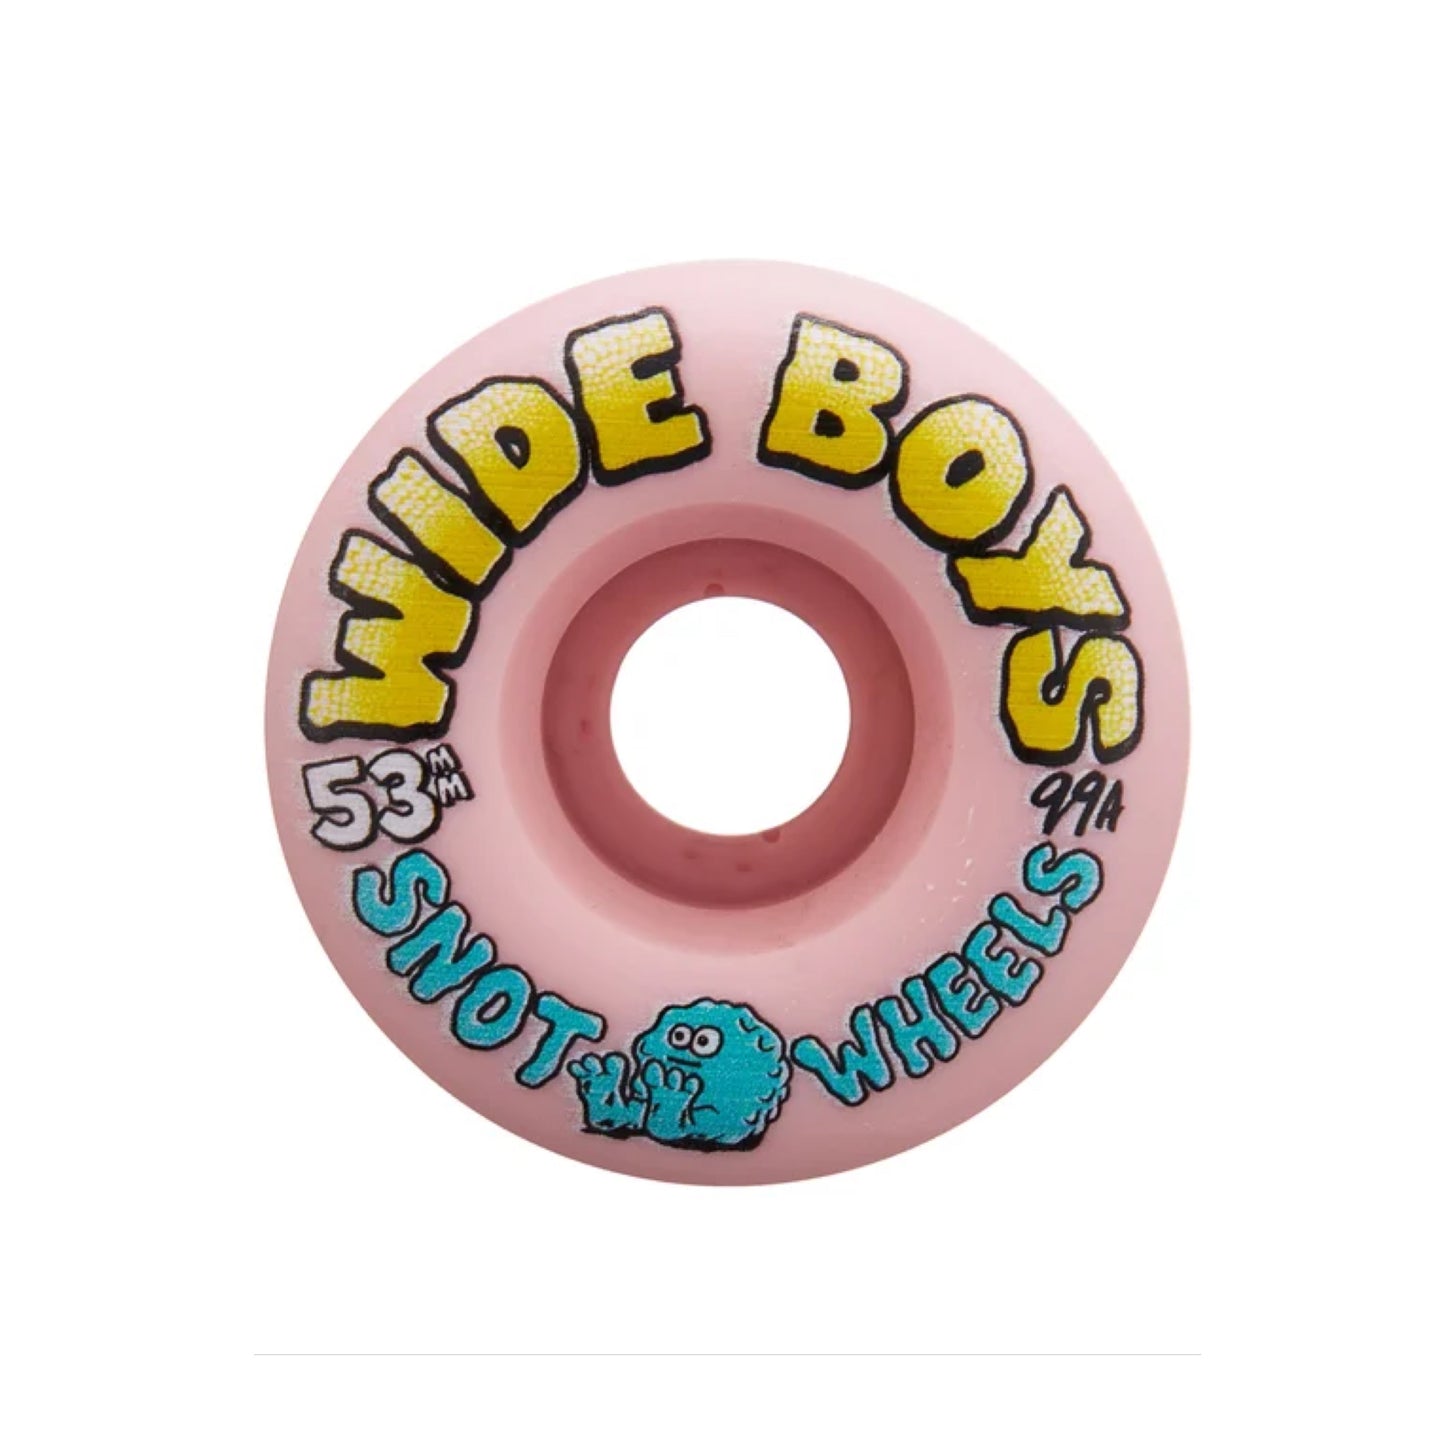 Snot Wide Boys 53mm Pale Pink Skateboard Wheels